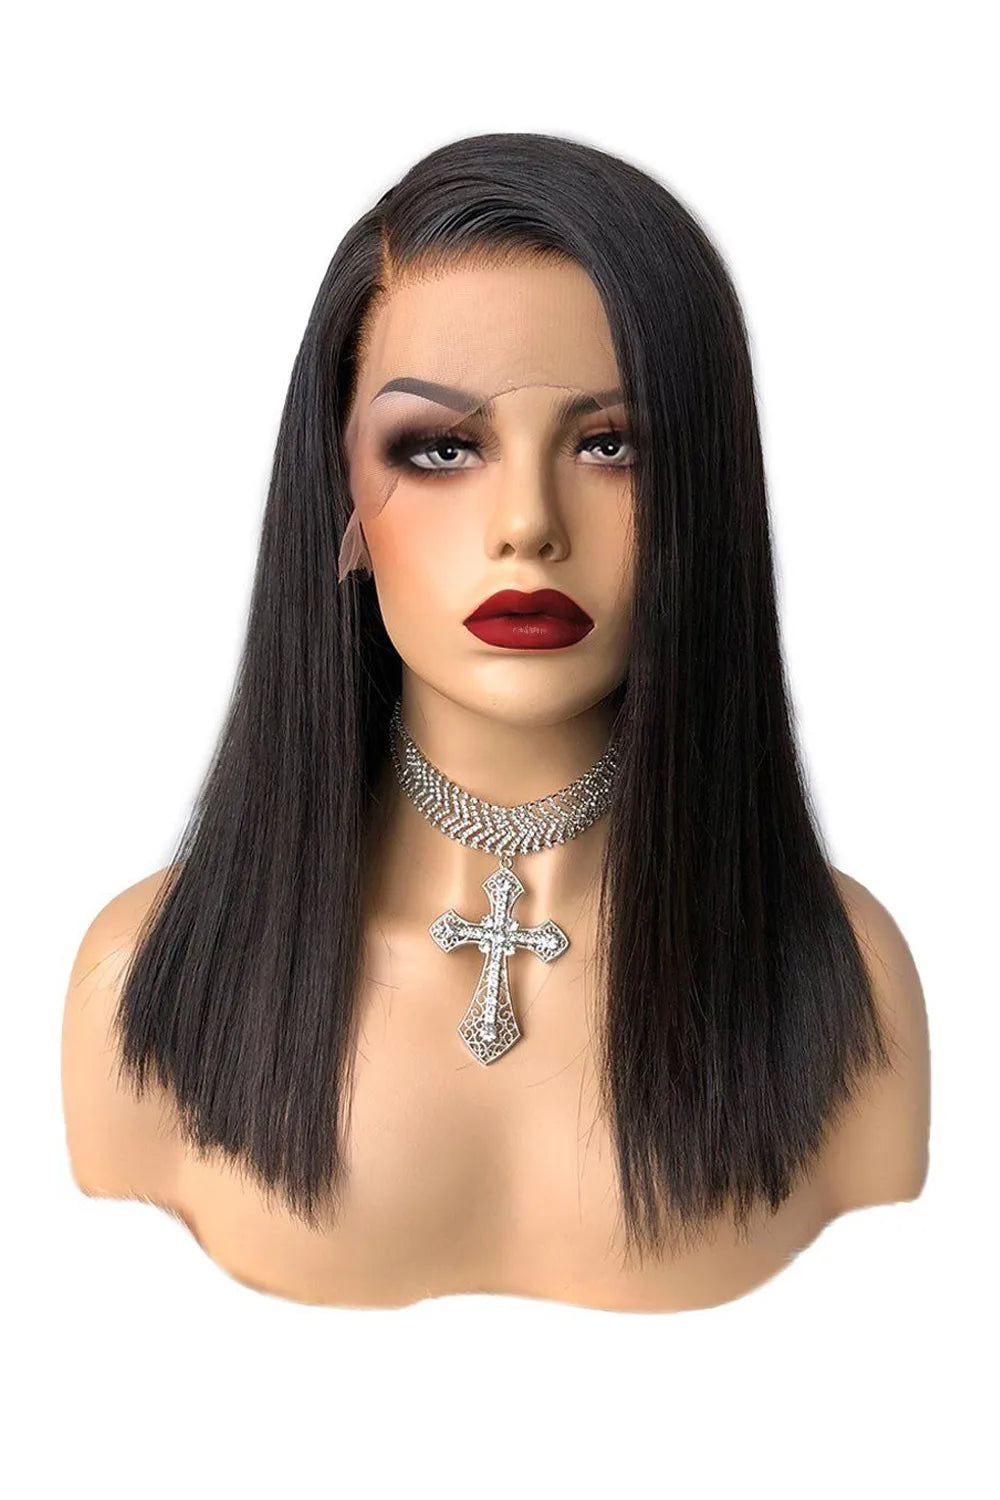 Shoulder length long bob wig 13x6 hd lace black straight virgin hair model wearing renderings